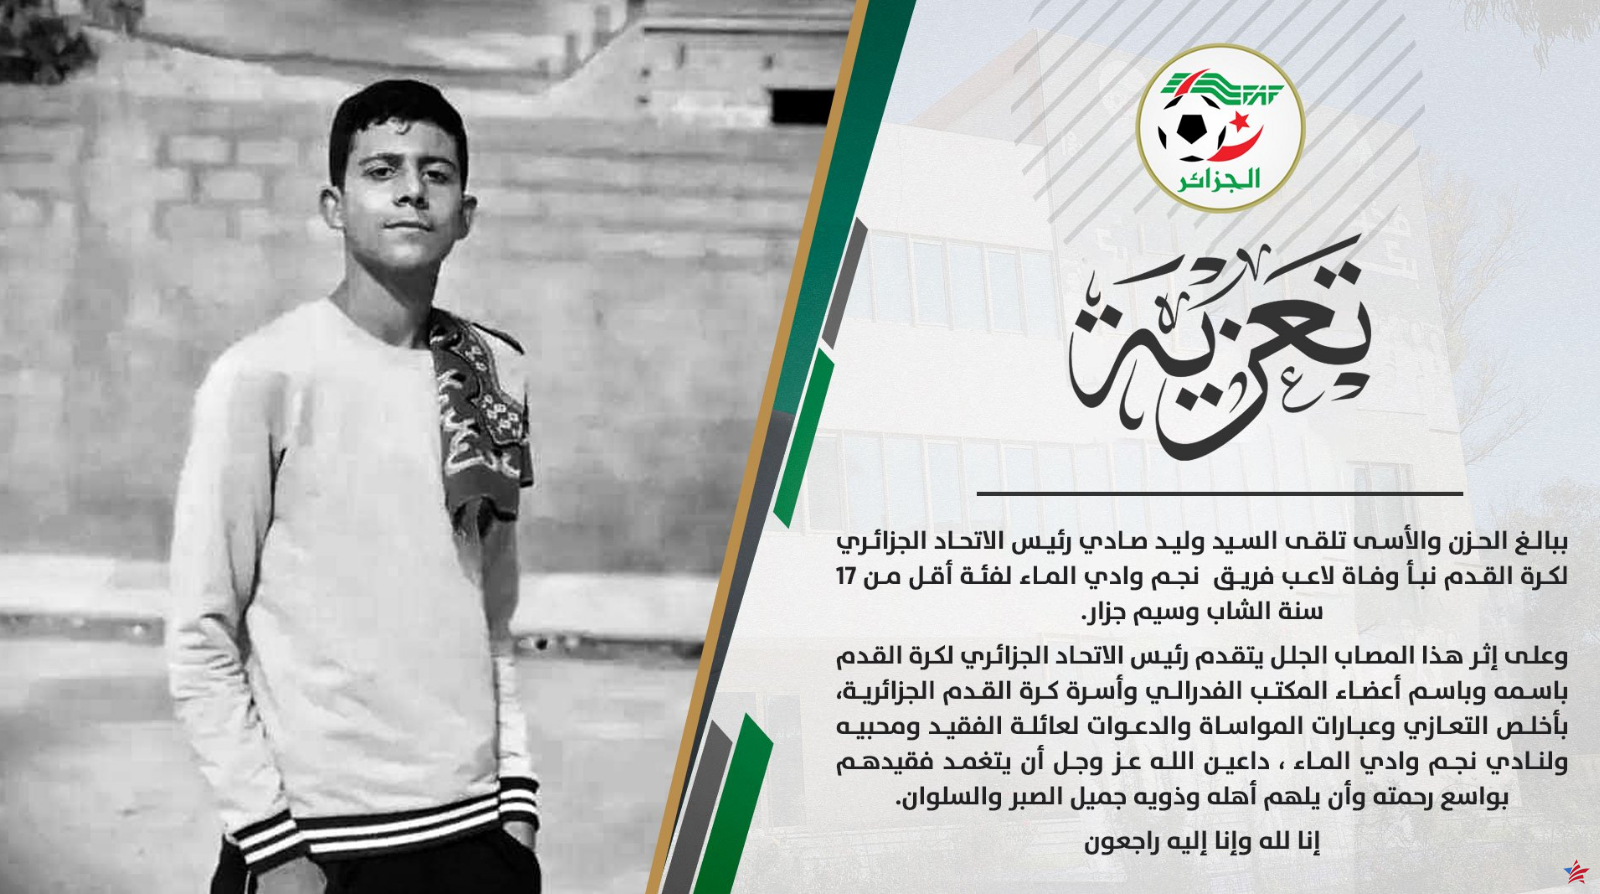 Fútbol: un argelino de 17 años muere tras una caída durante un partido